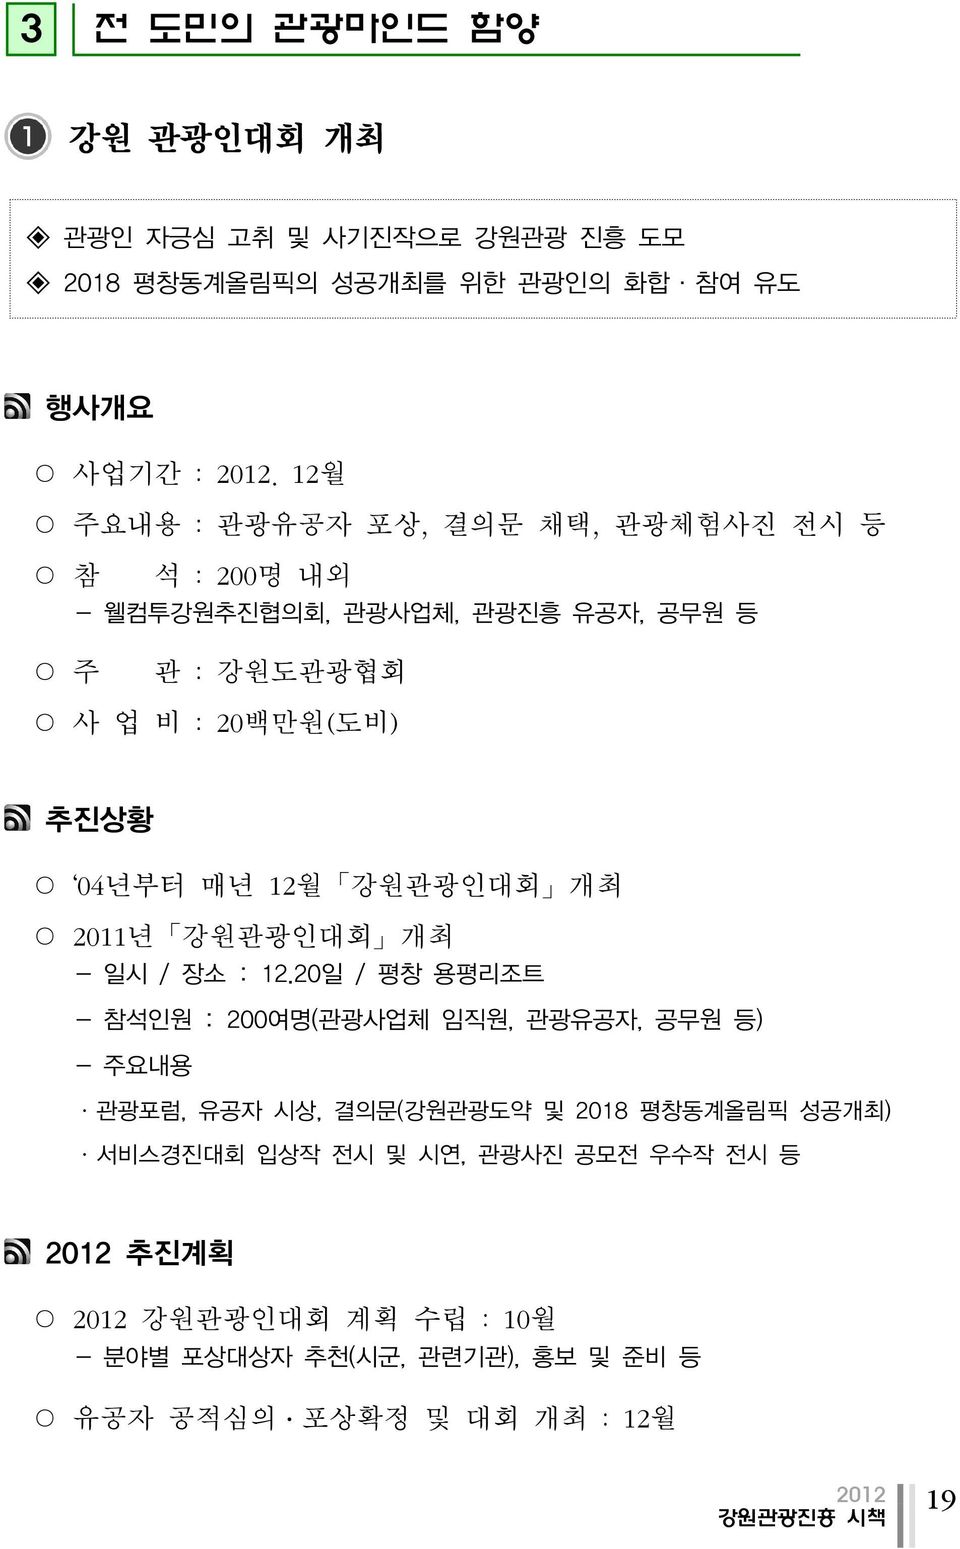 12월 강원관광인대회 개최 2011년 강원관광인대회 개최 - 일시 / 장소 : 12.